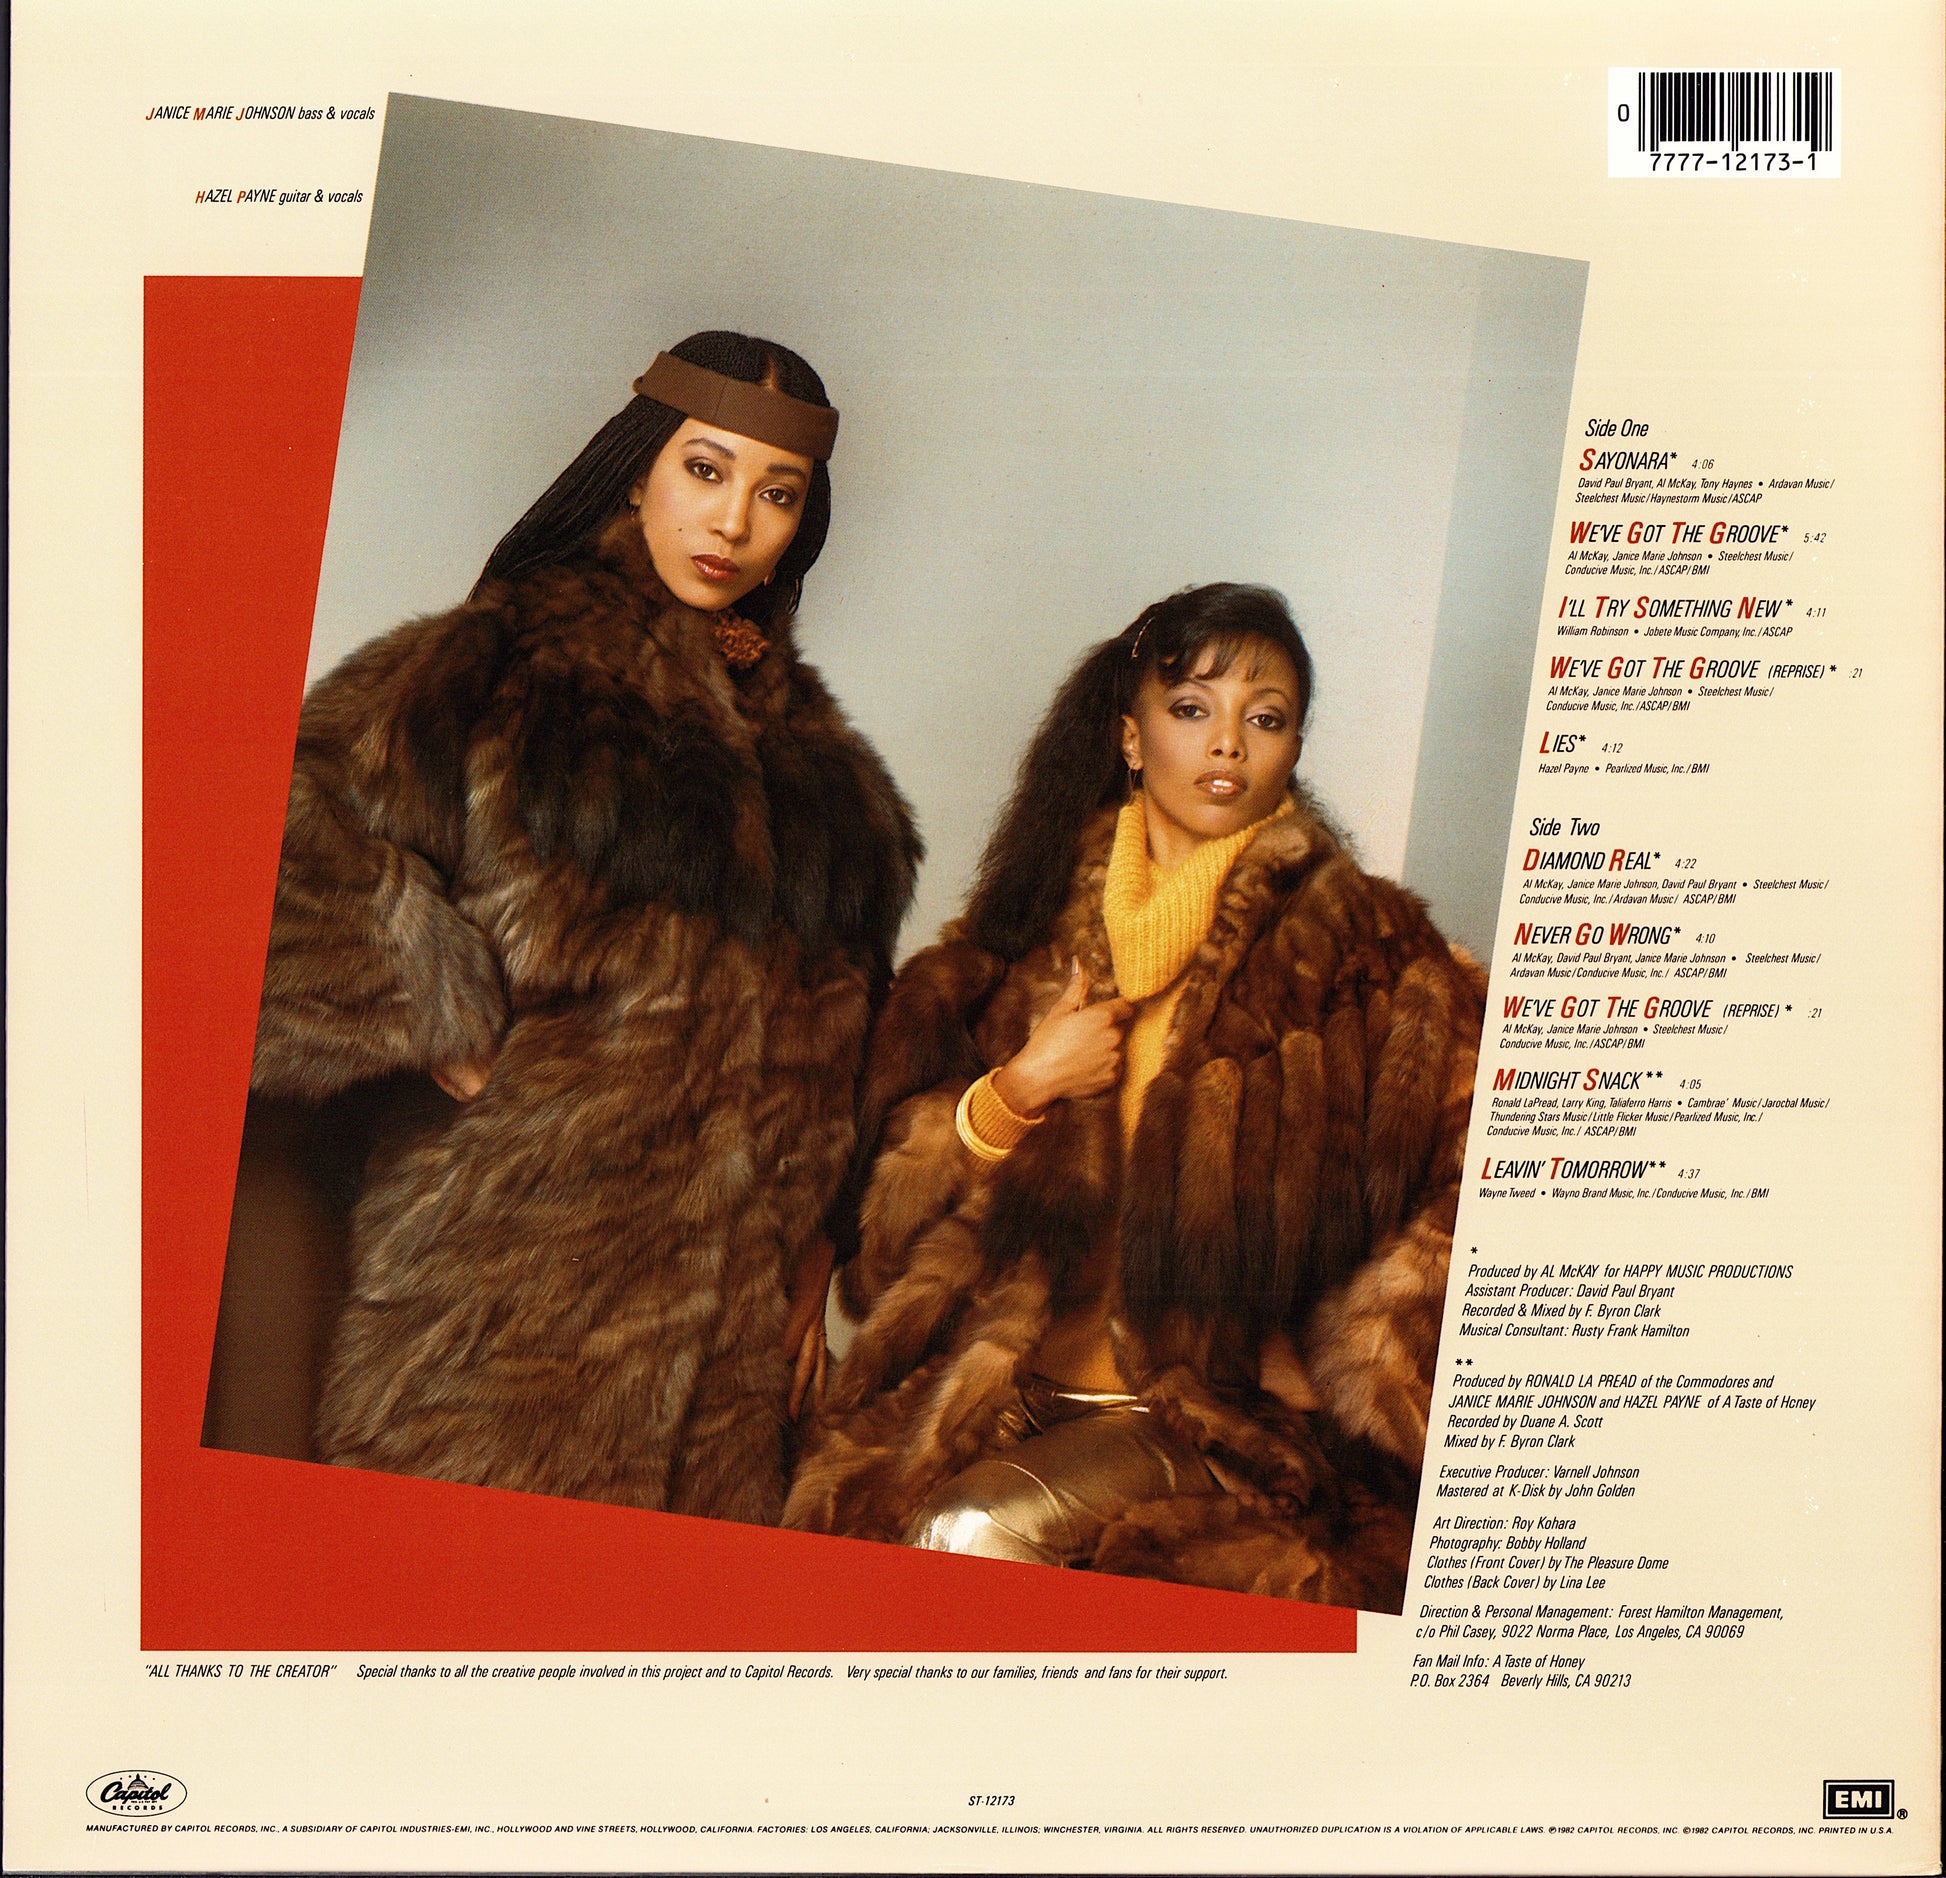 A Taste Of Honey – Ladies Of The Eighties Vinyl LP